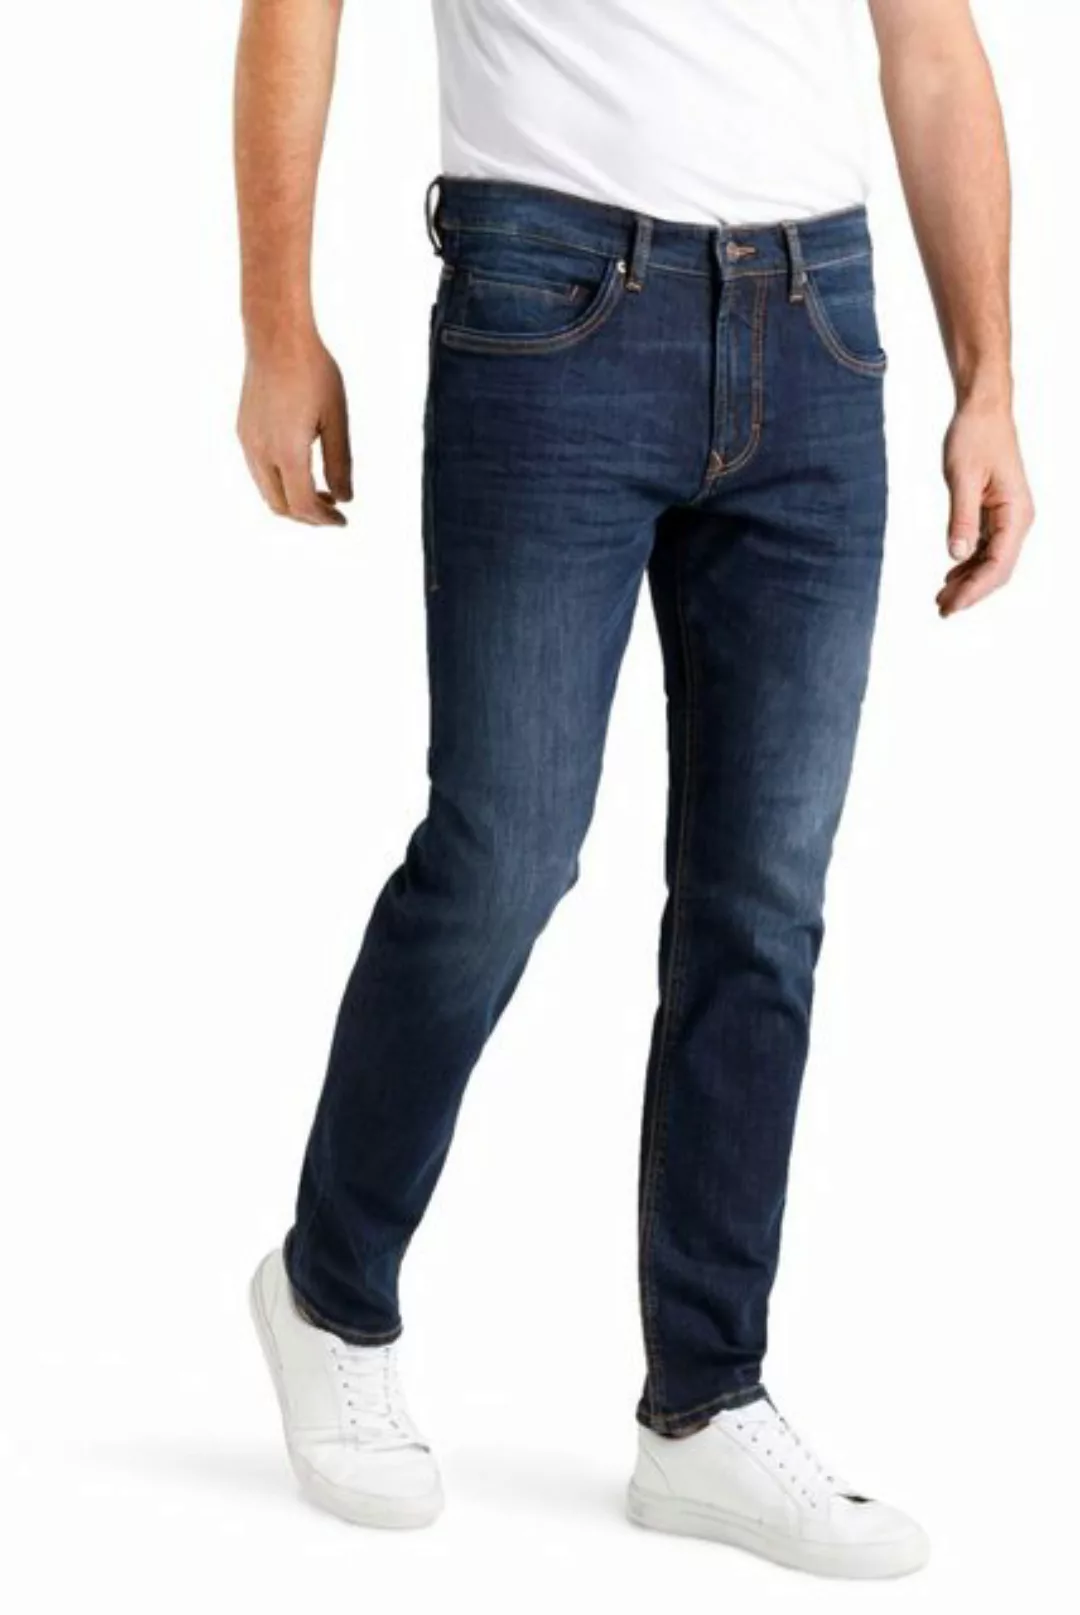 MAC Jeans Arne Pipe Authentic Dunkelblau - Größe W 38 - L 32 günstig online kaufen